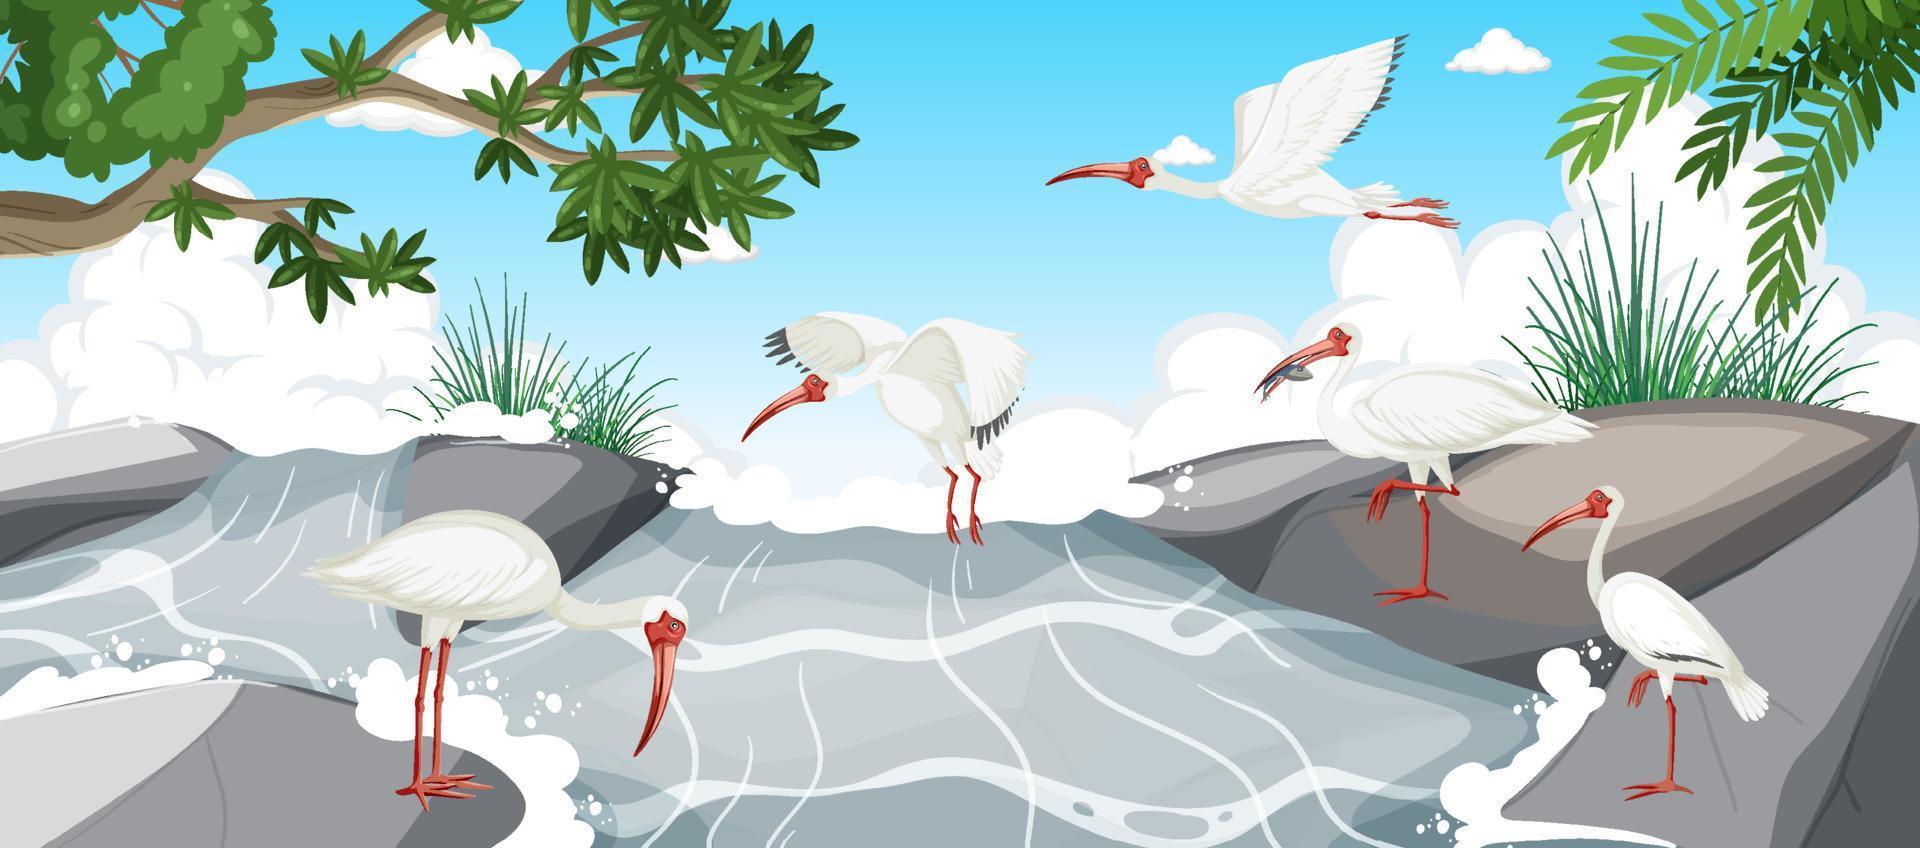 Amerikaanse witte ibis-groep in het bos vector